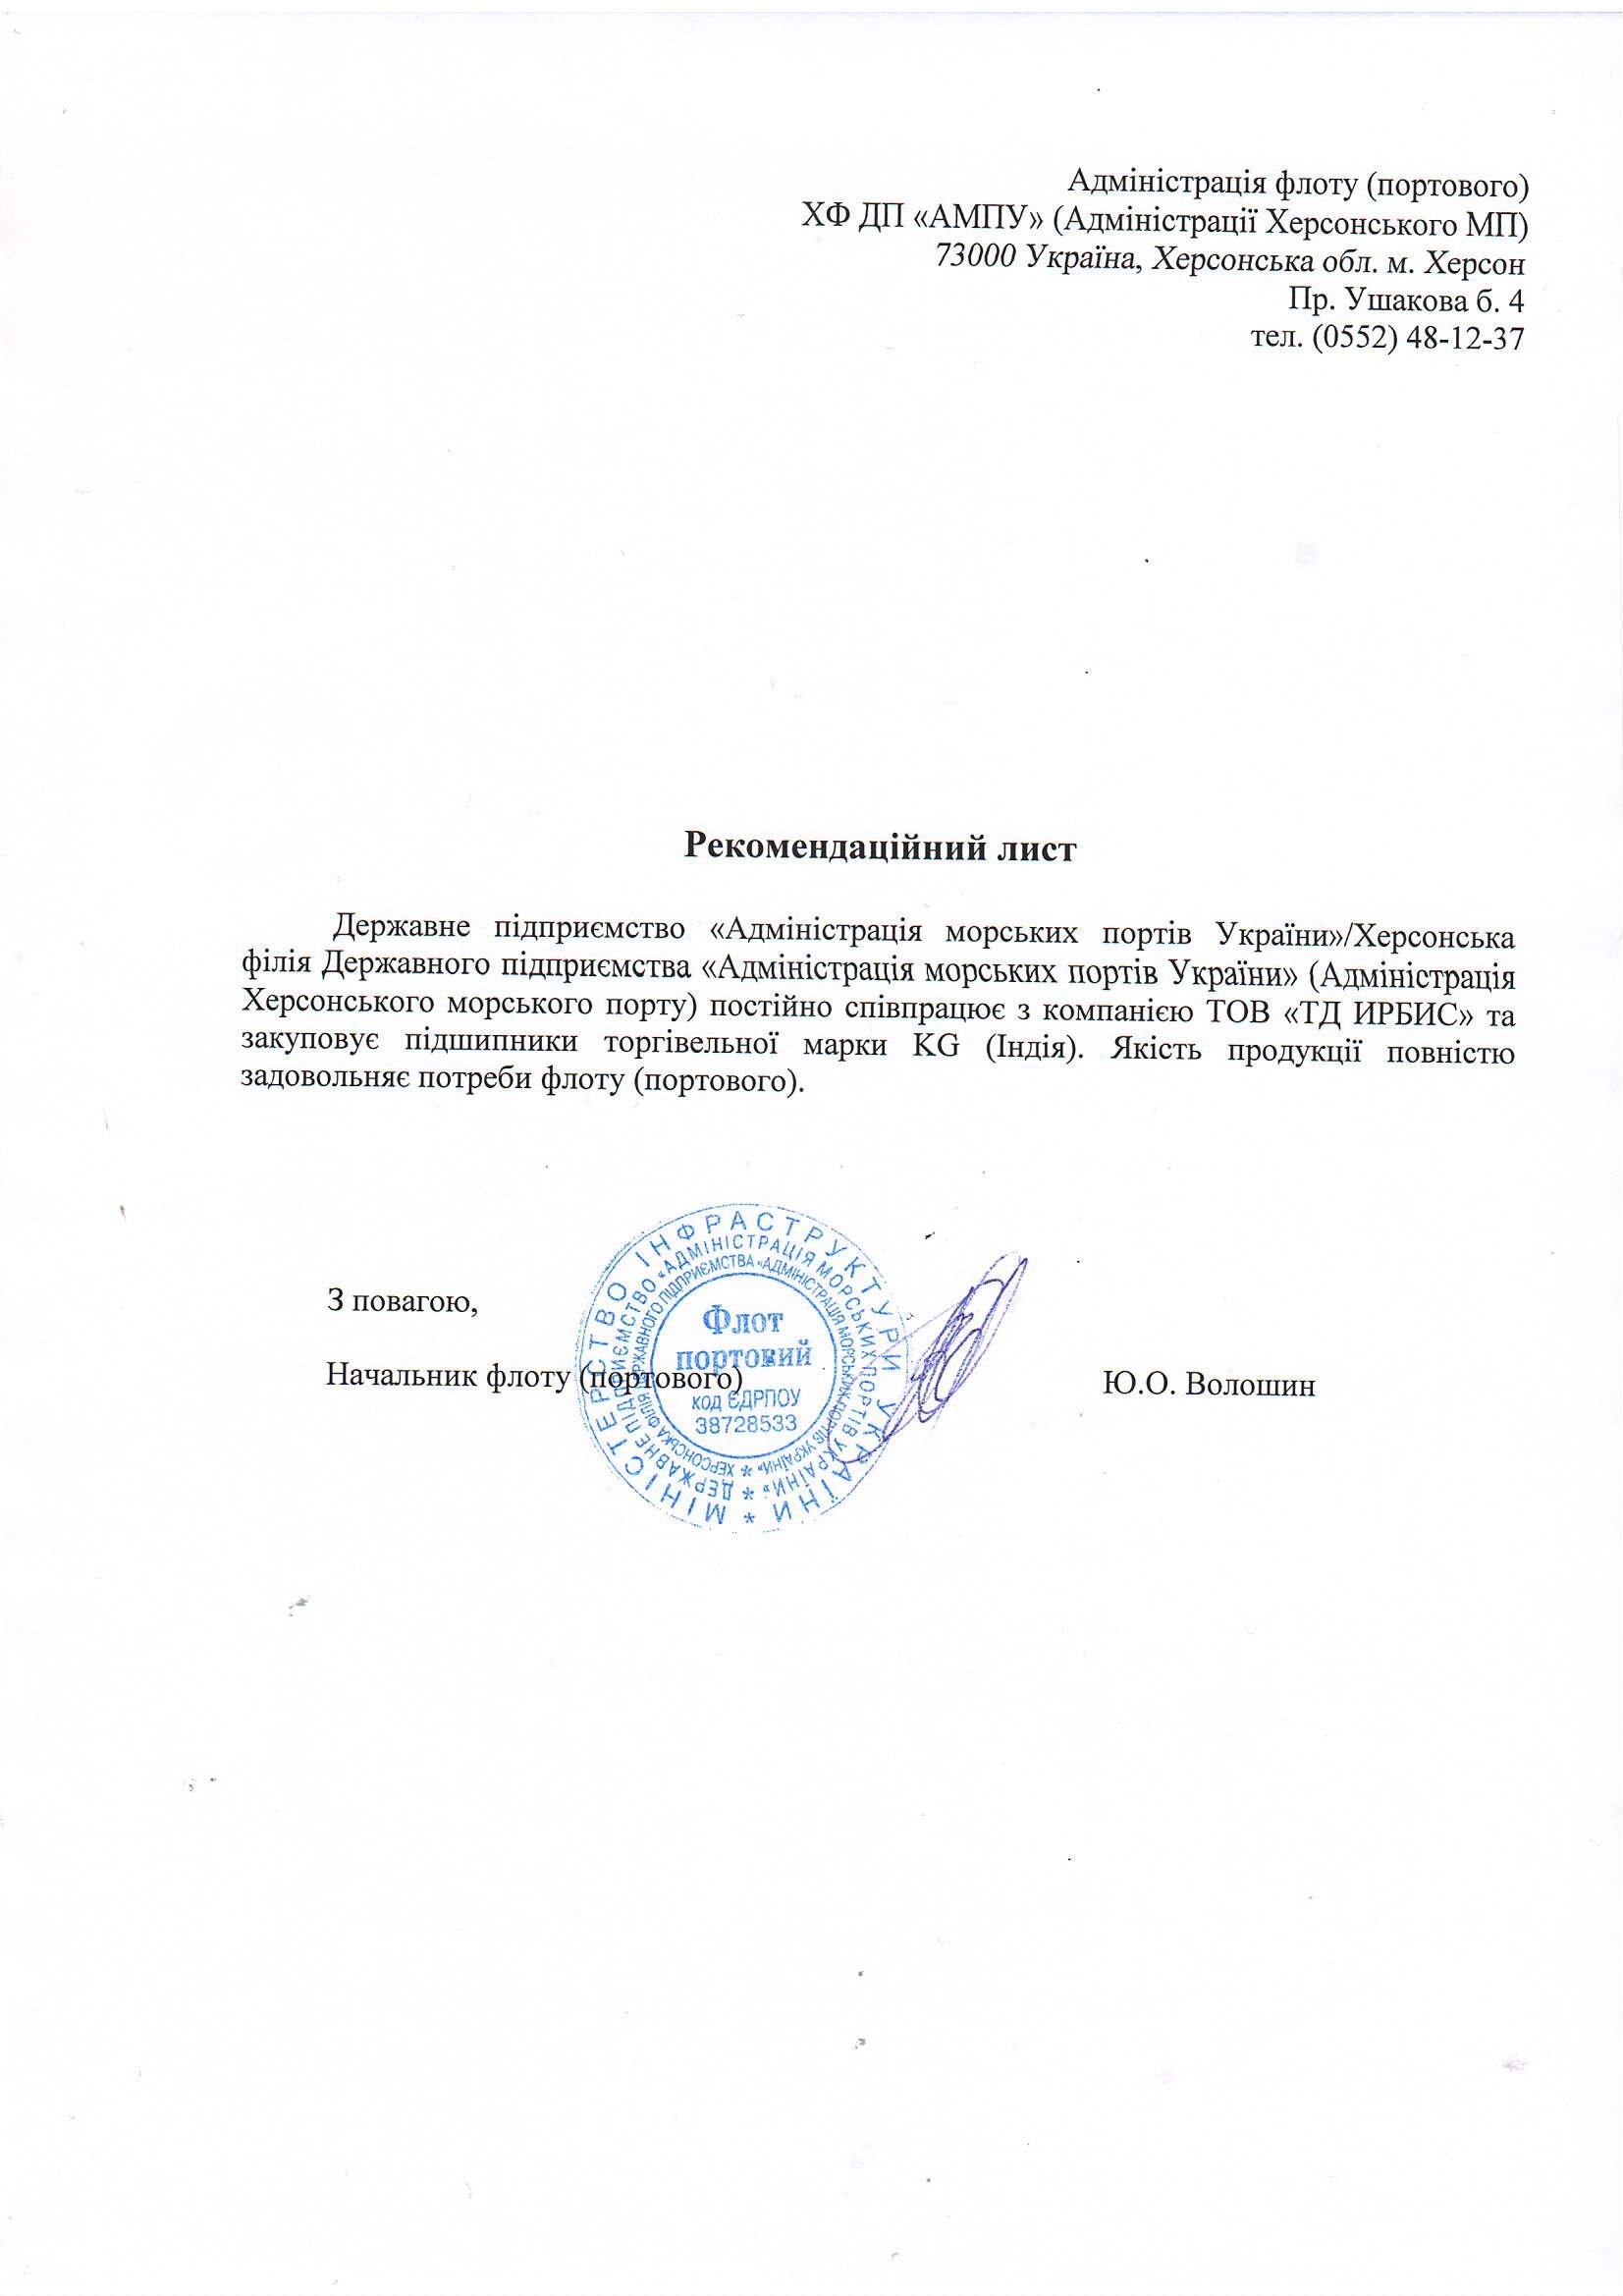 Рекомендаційний лист Адміністрація морських портів України (KG)